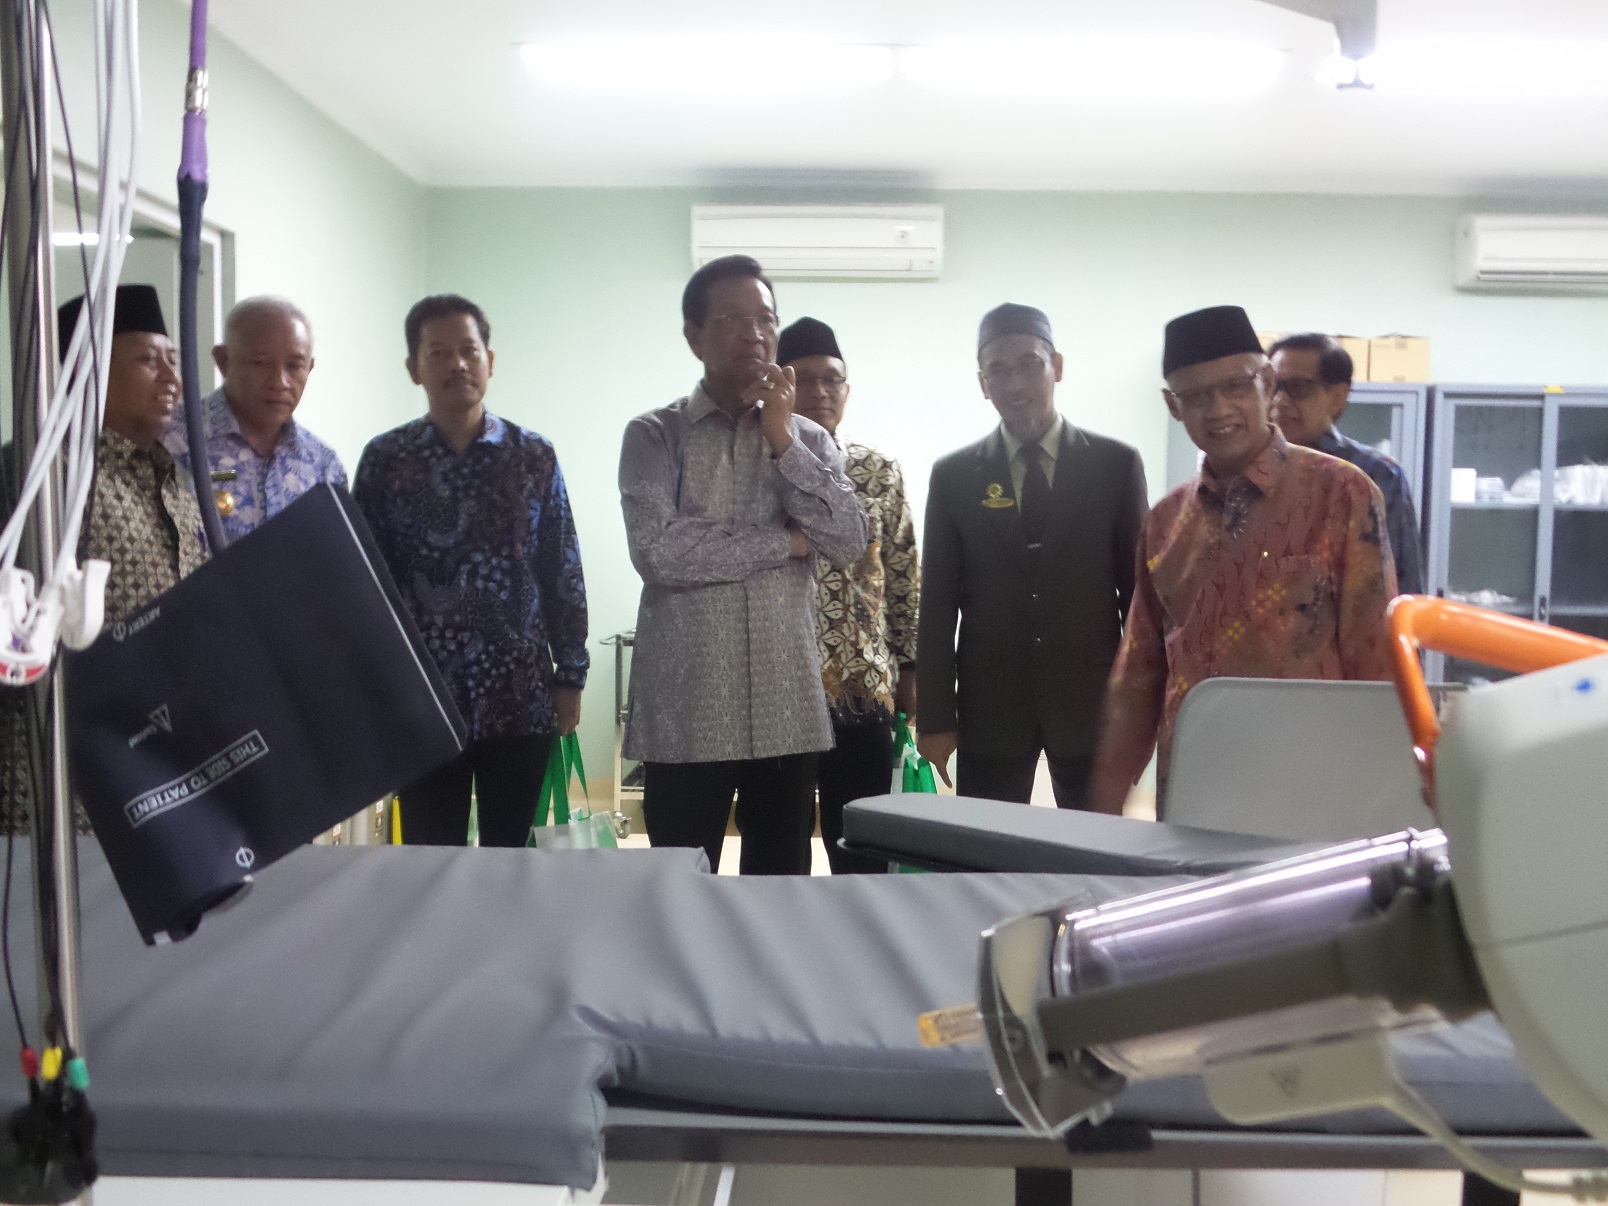 PELAYAN: Haedar Nashir bersama Sri Sultan Hamengku Buwono X,  di RS PKU Muhammadiyah Gamping Jogjakarta. (foto:muhammdiyah.co.id)